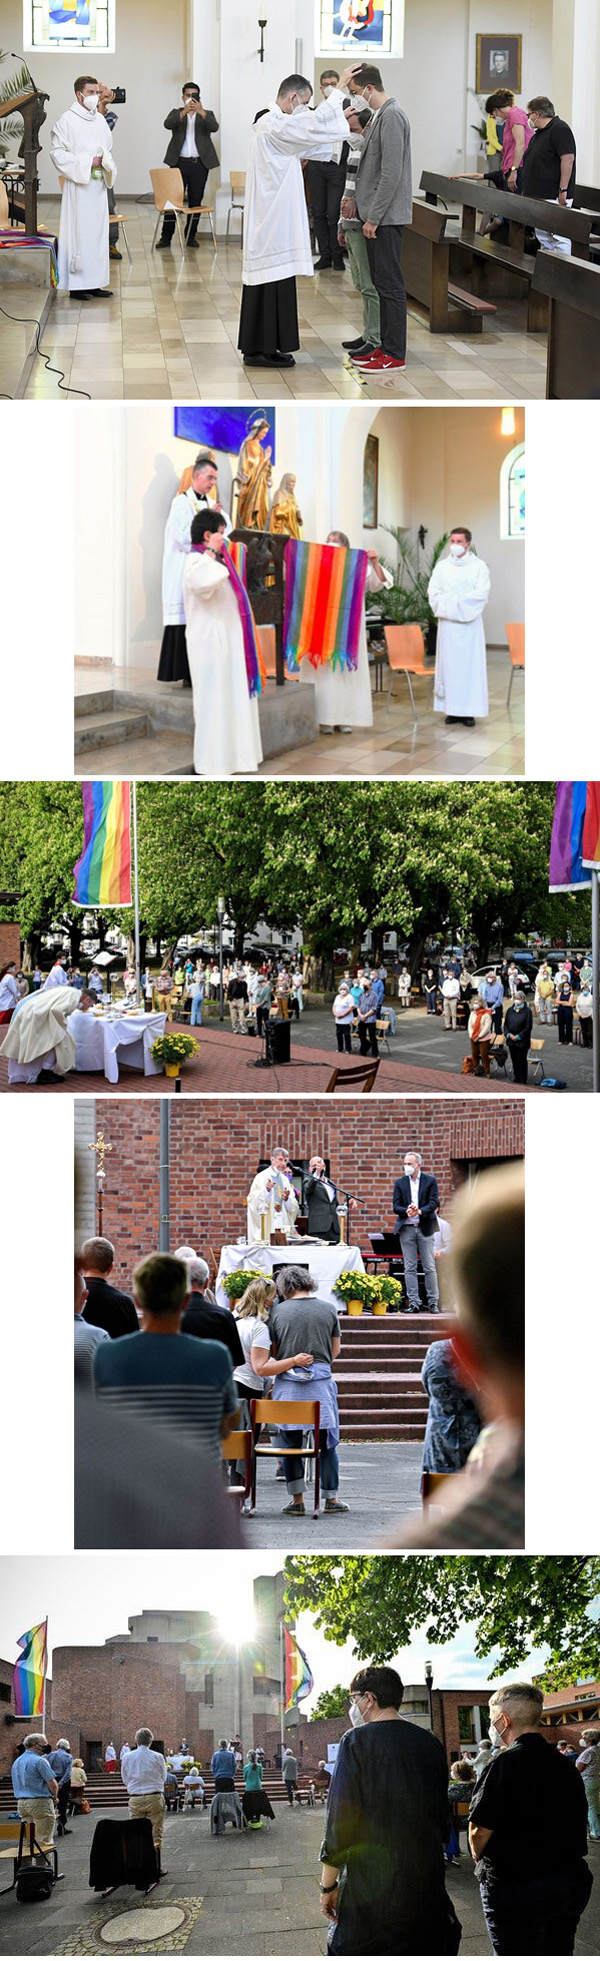 La iglesia alemana bendice las homosexulas 2